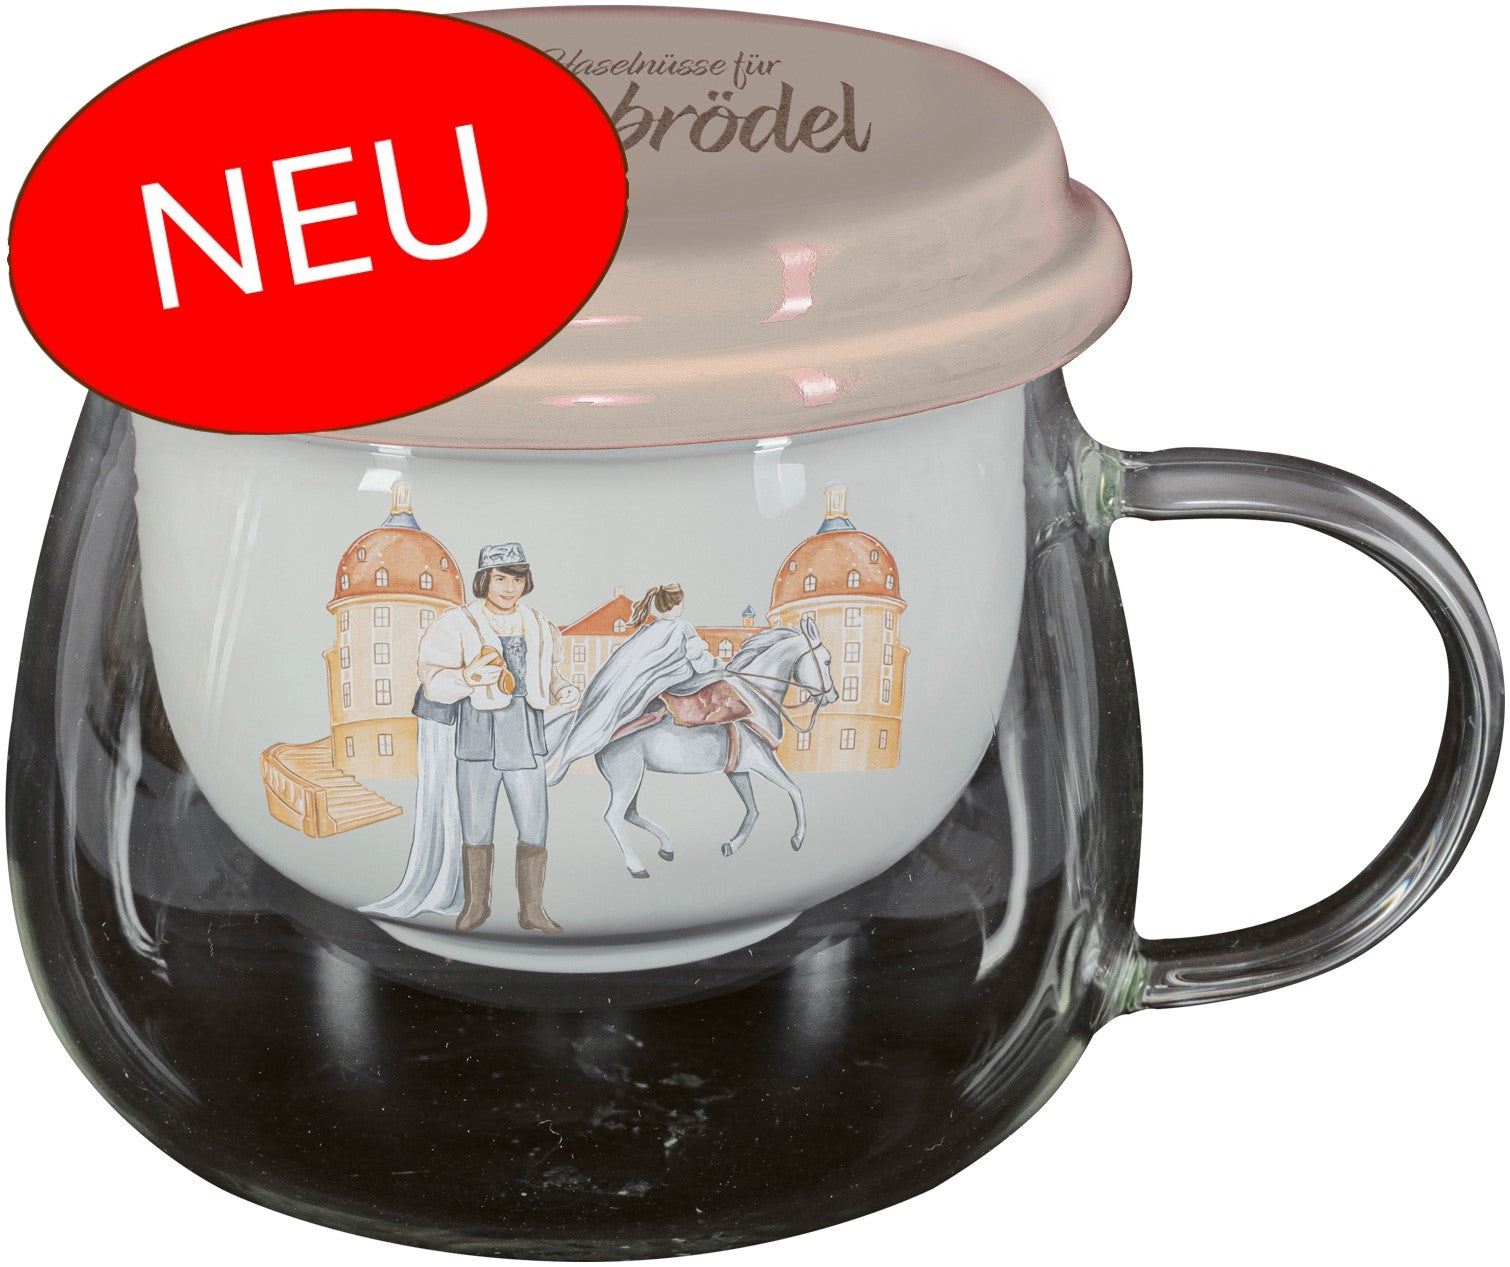 Glas mit Henkel mit Teeeinsatz aus Keramik, mit Illustrationen von Prinz, Aschenbrödel und Schloss Moritzburg